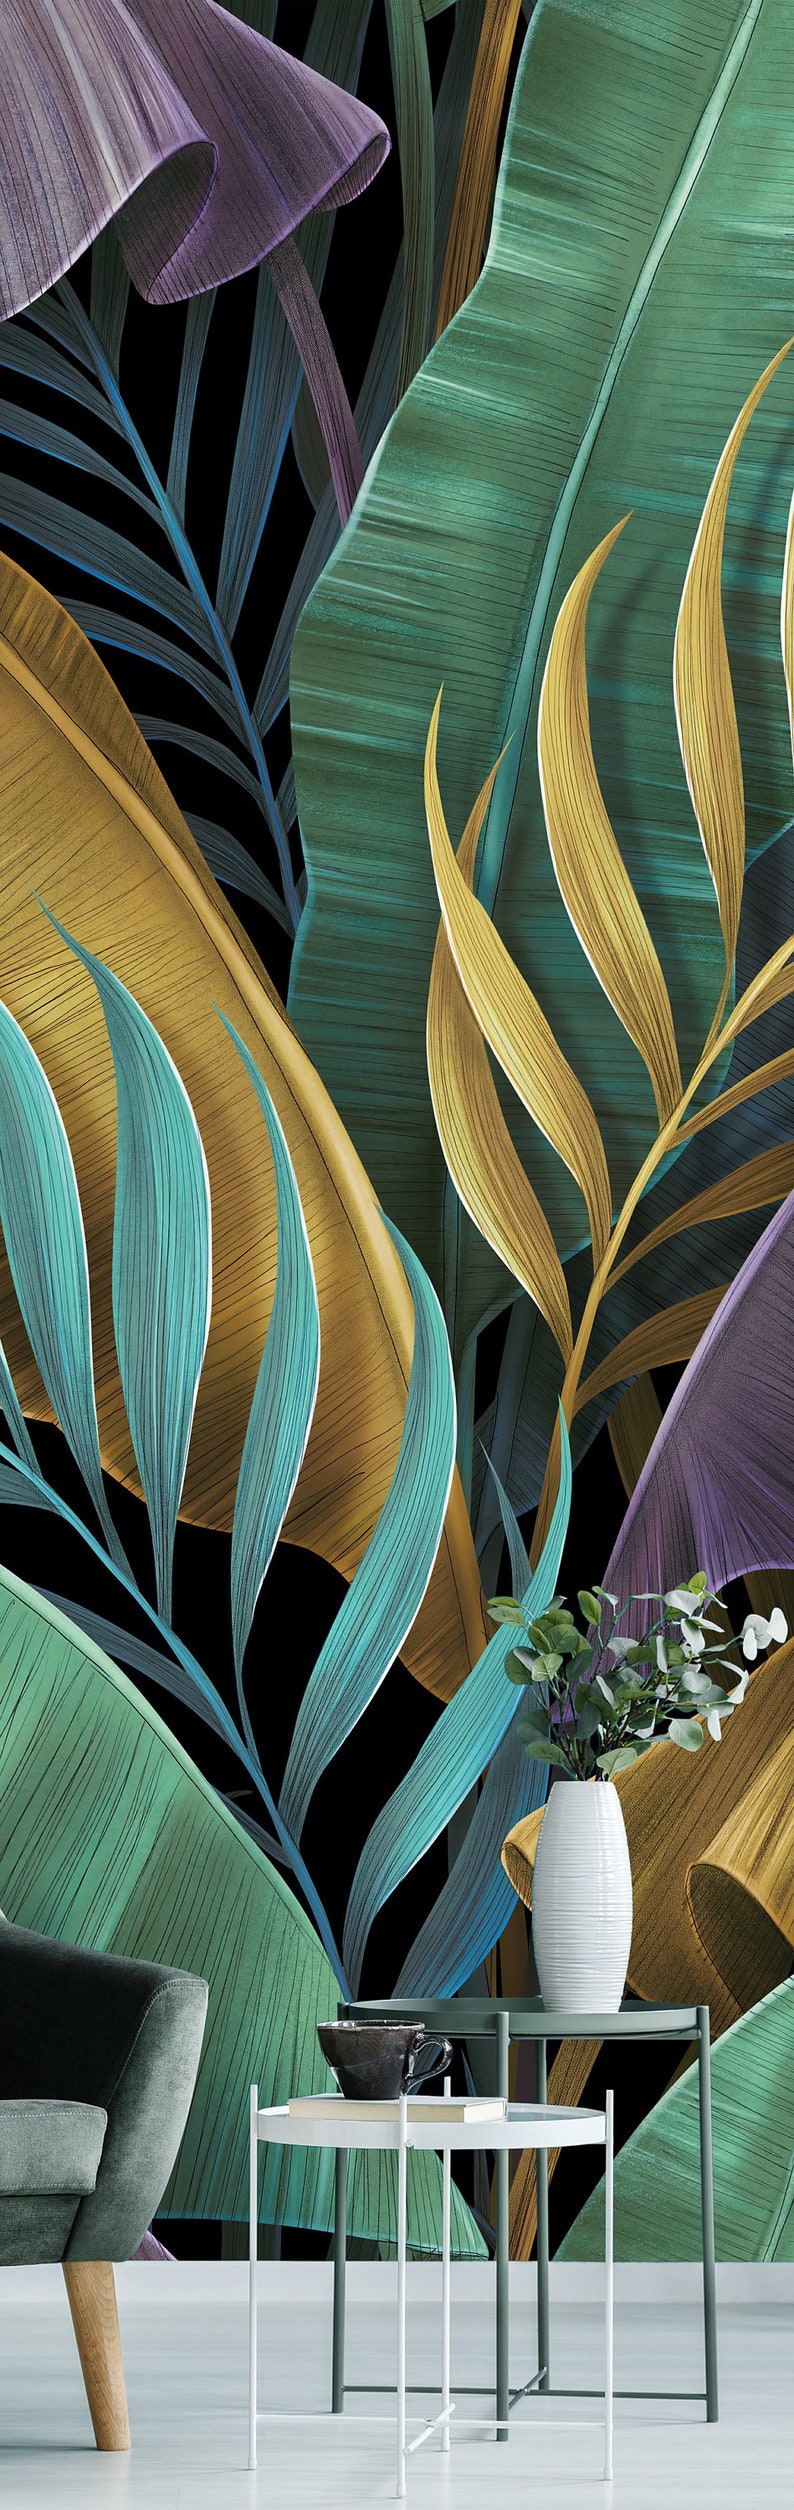 Papier peint exotique tropical, feuilles de bananier colorées pastel, palmier, peinture murale à peau et bâton, auto-adhésif, décoration murale tropicale image 5